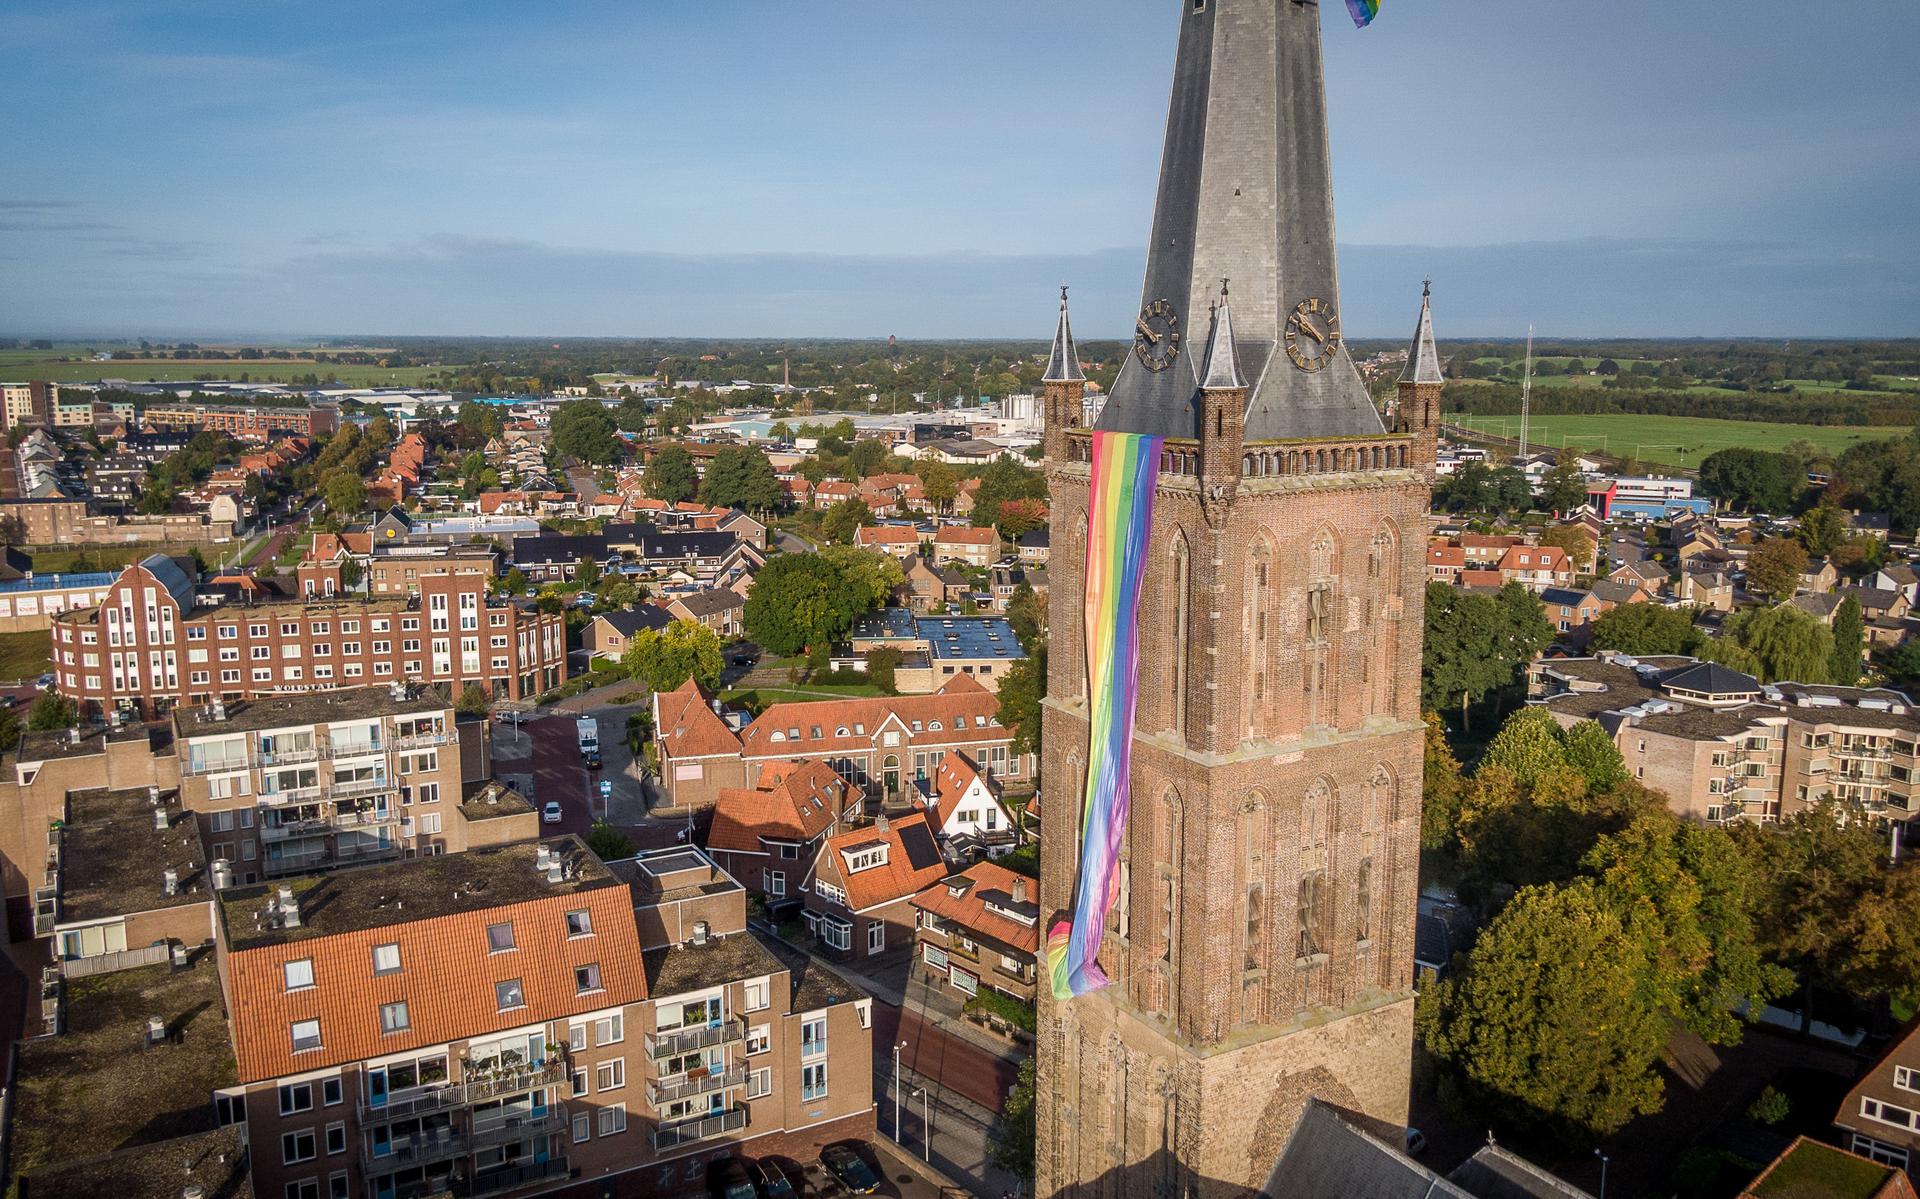 Tijdens de Regenboogweek was de hele week de Regenboogvlag te zien op de toren in Steenwijk.